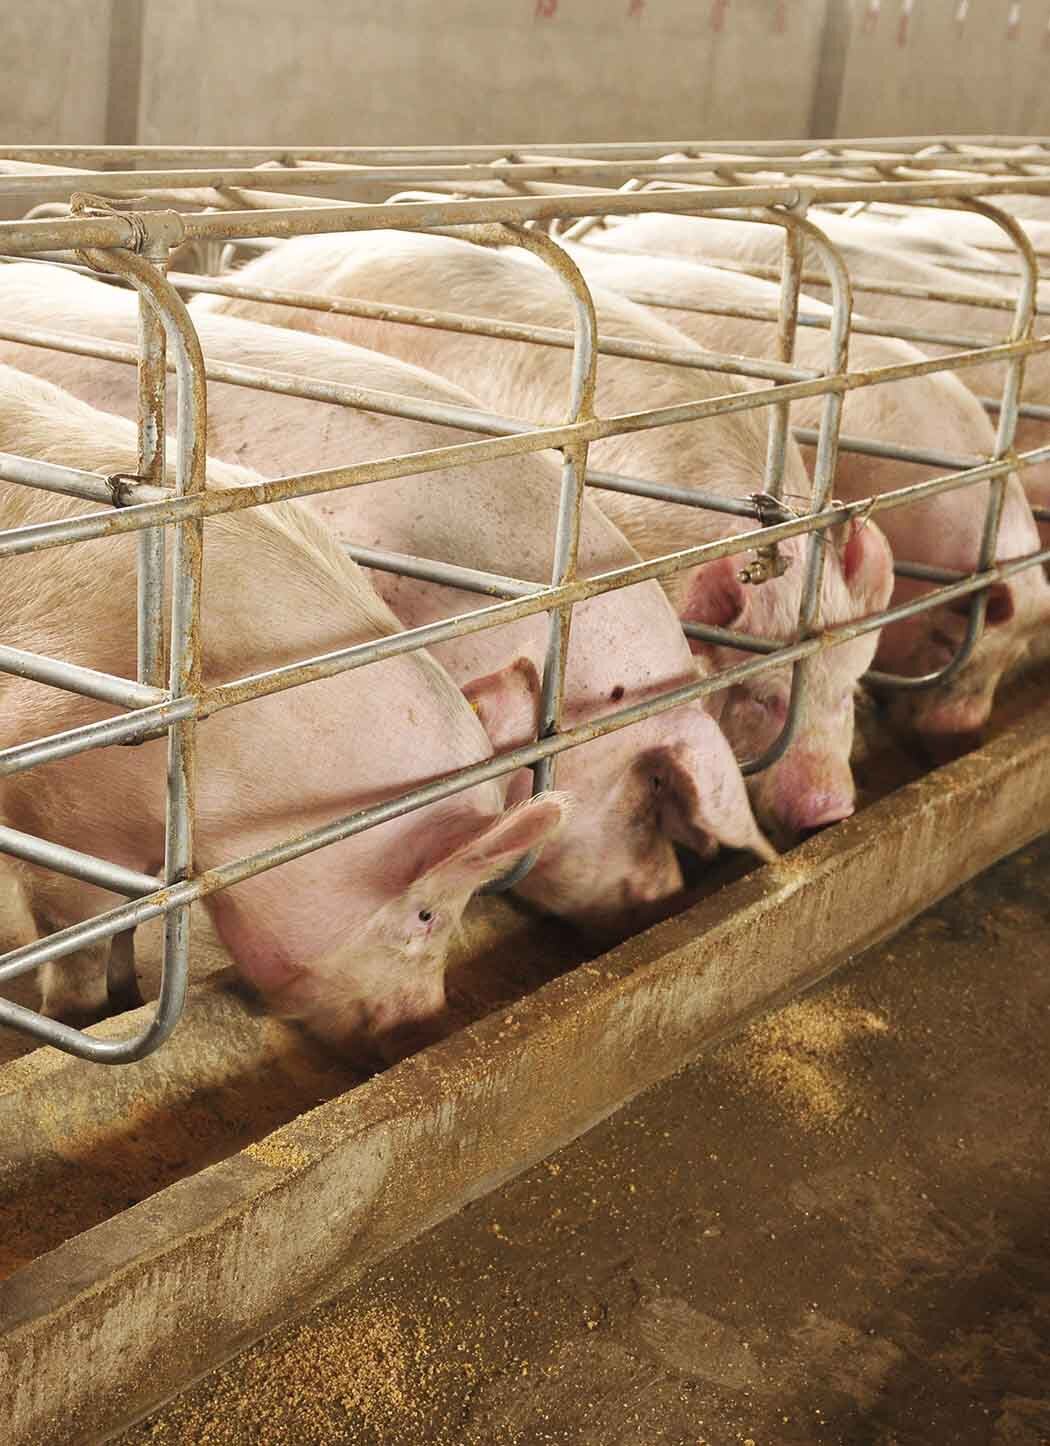 Продукты для свиноводства - откорм